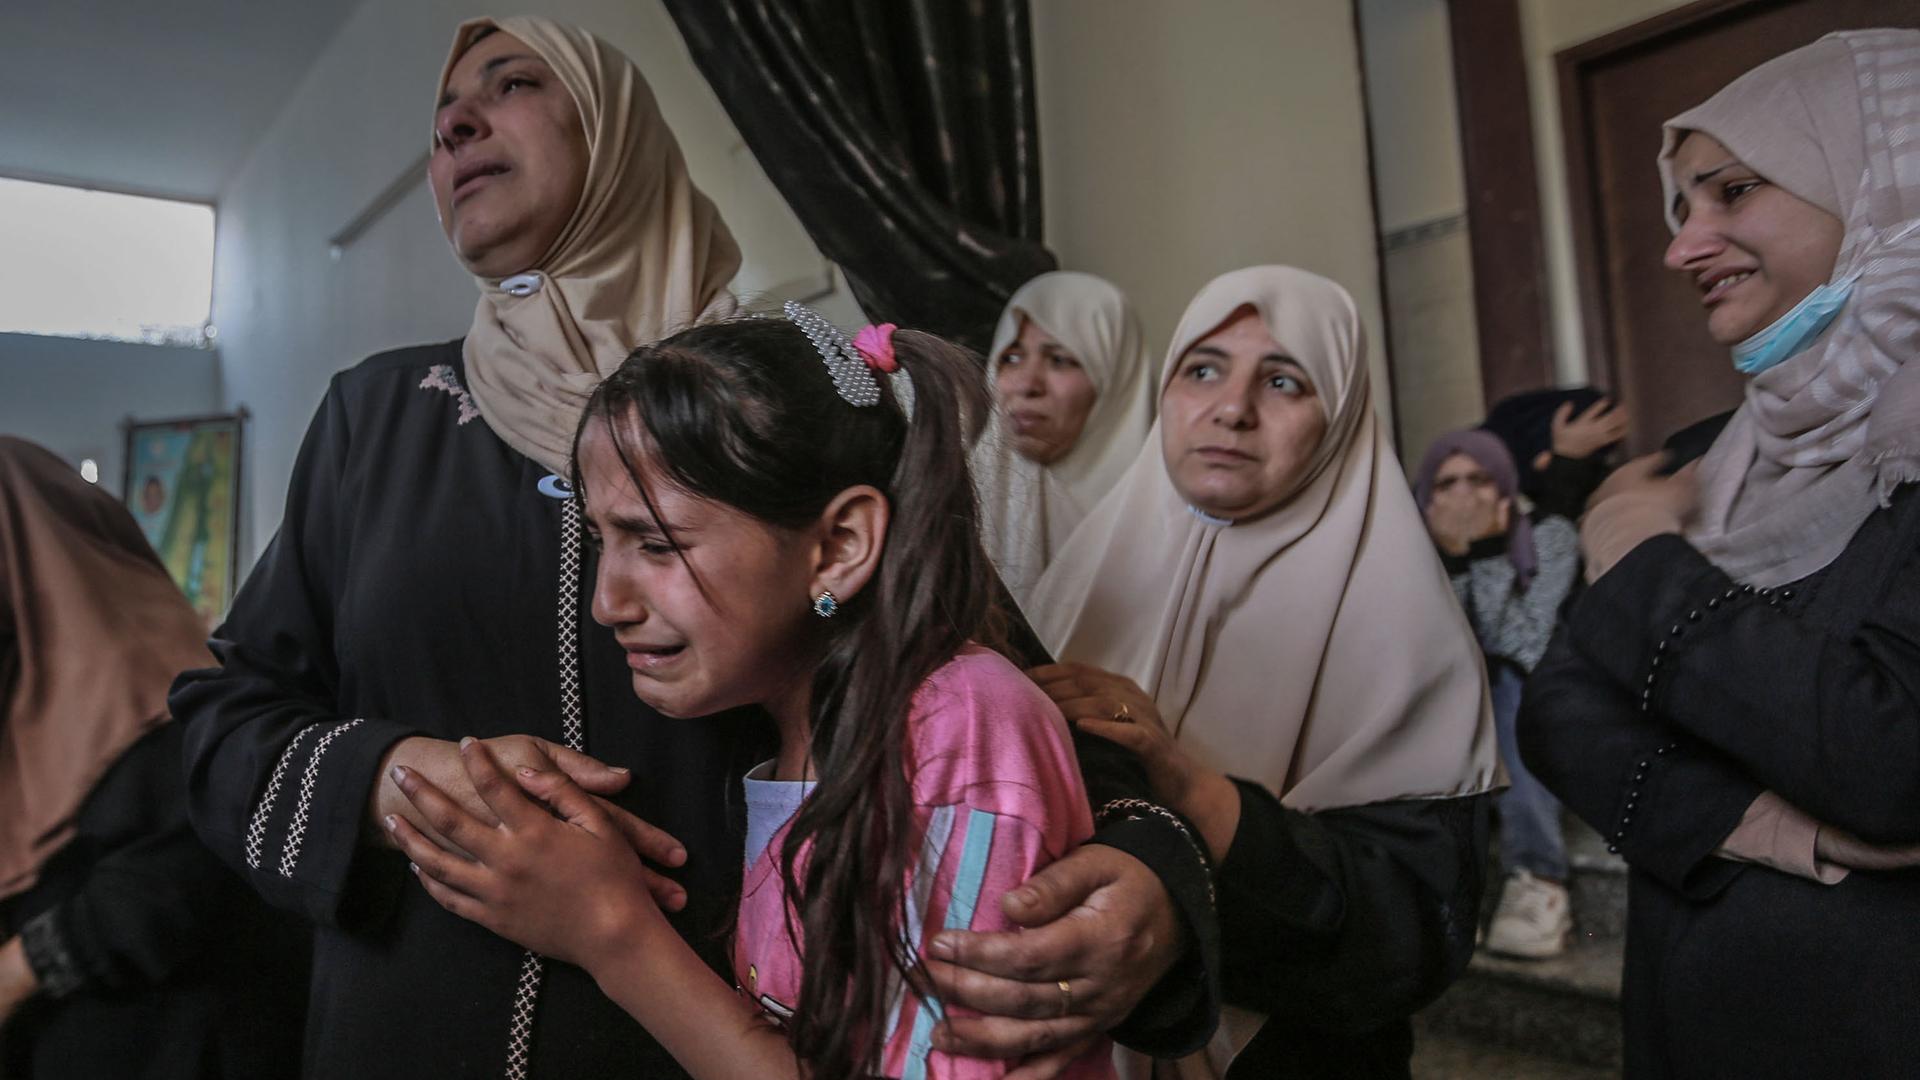 Angehörige trauern während einer Bestattungszeremonie eines bei einem israelischen Luftangriff getöteten Palästinensers. Zu sehen ist ein weinendes Mädchen und mehrere Frauen um sie herum.